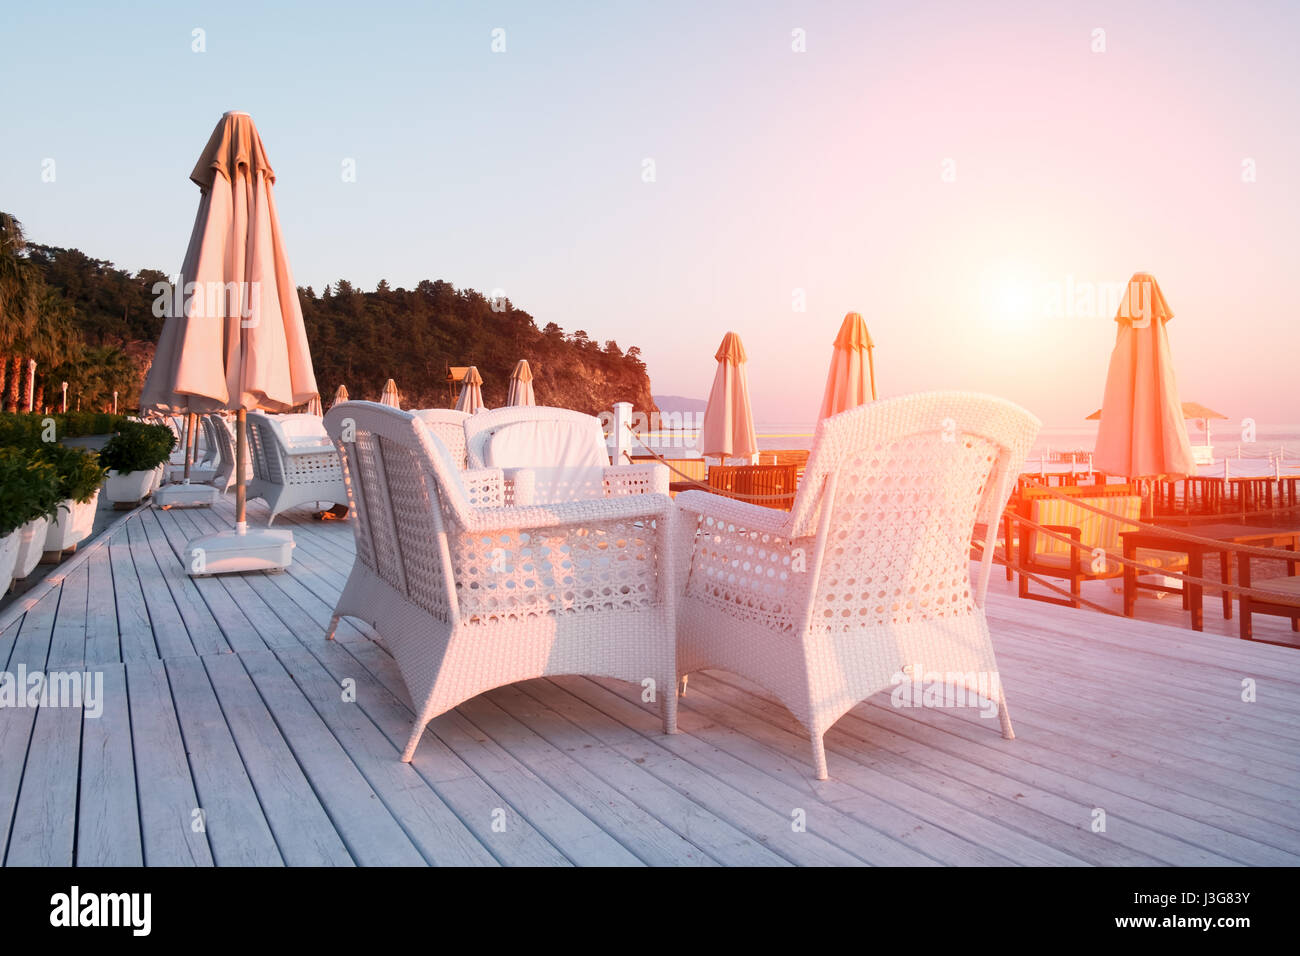 Restaurant d'été sur la plage. Vue imprenable sur la mer méditerranée. Terrasse en bois blanc et mobilier tressé Banque D'Images